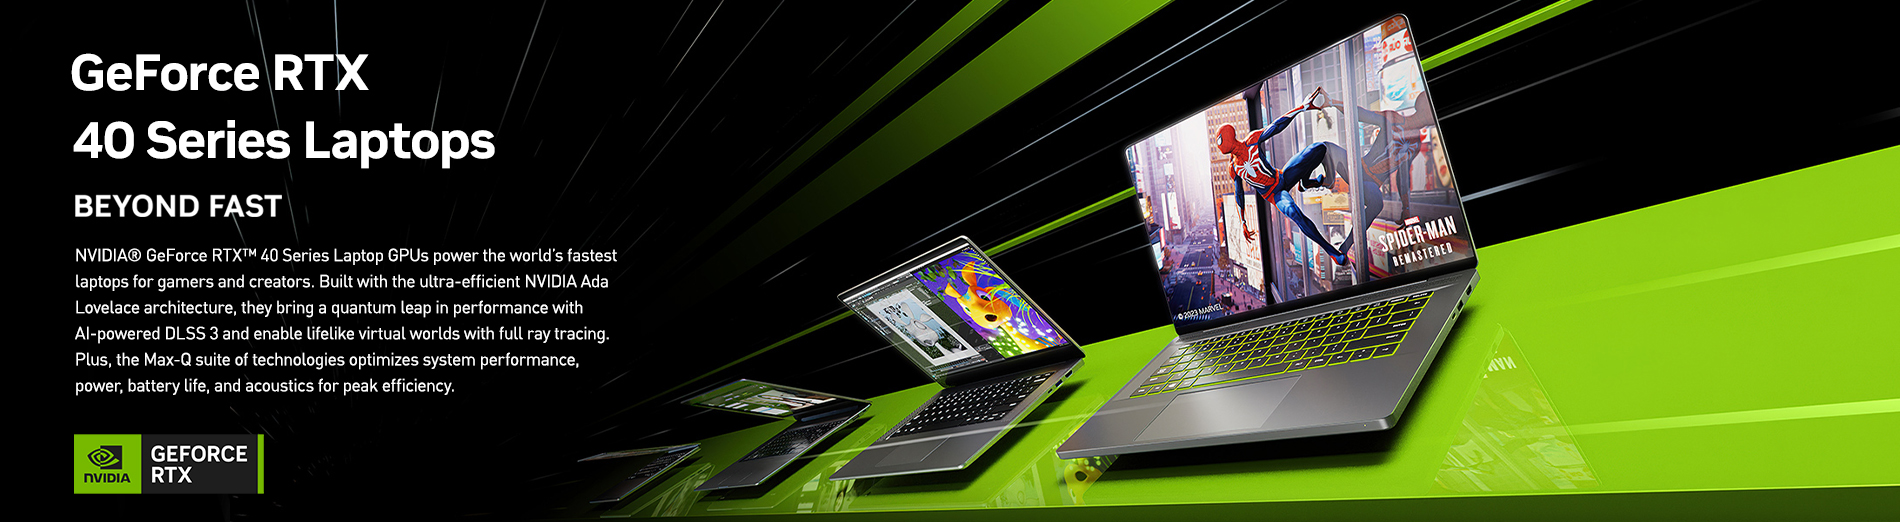 Nvidia 40Series Laptopsbanner2